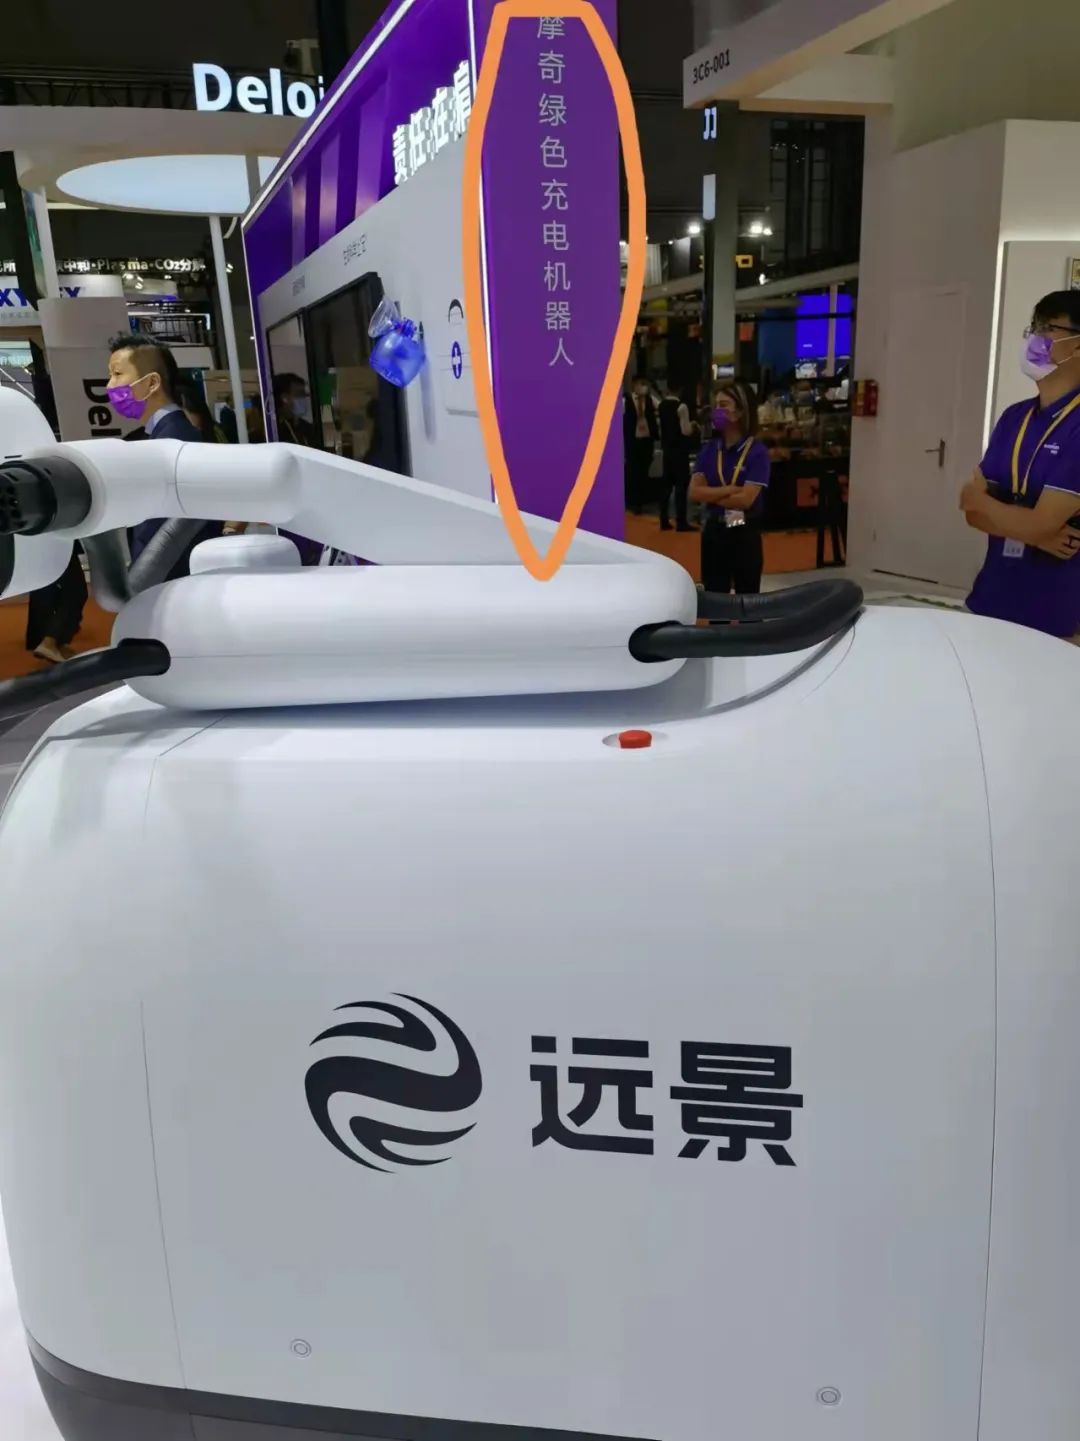 绿色科技企业远景科技集团带来了全球首台绿色充电机器人摩奇。